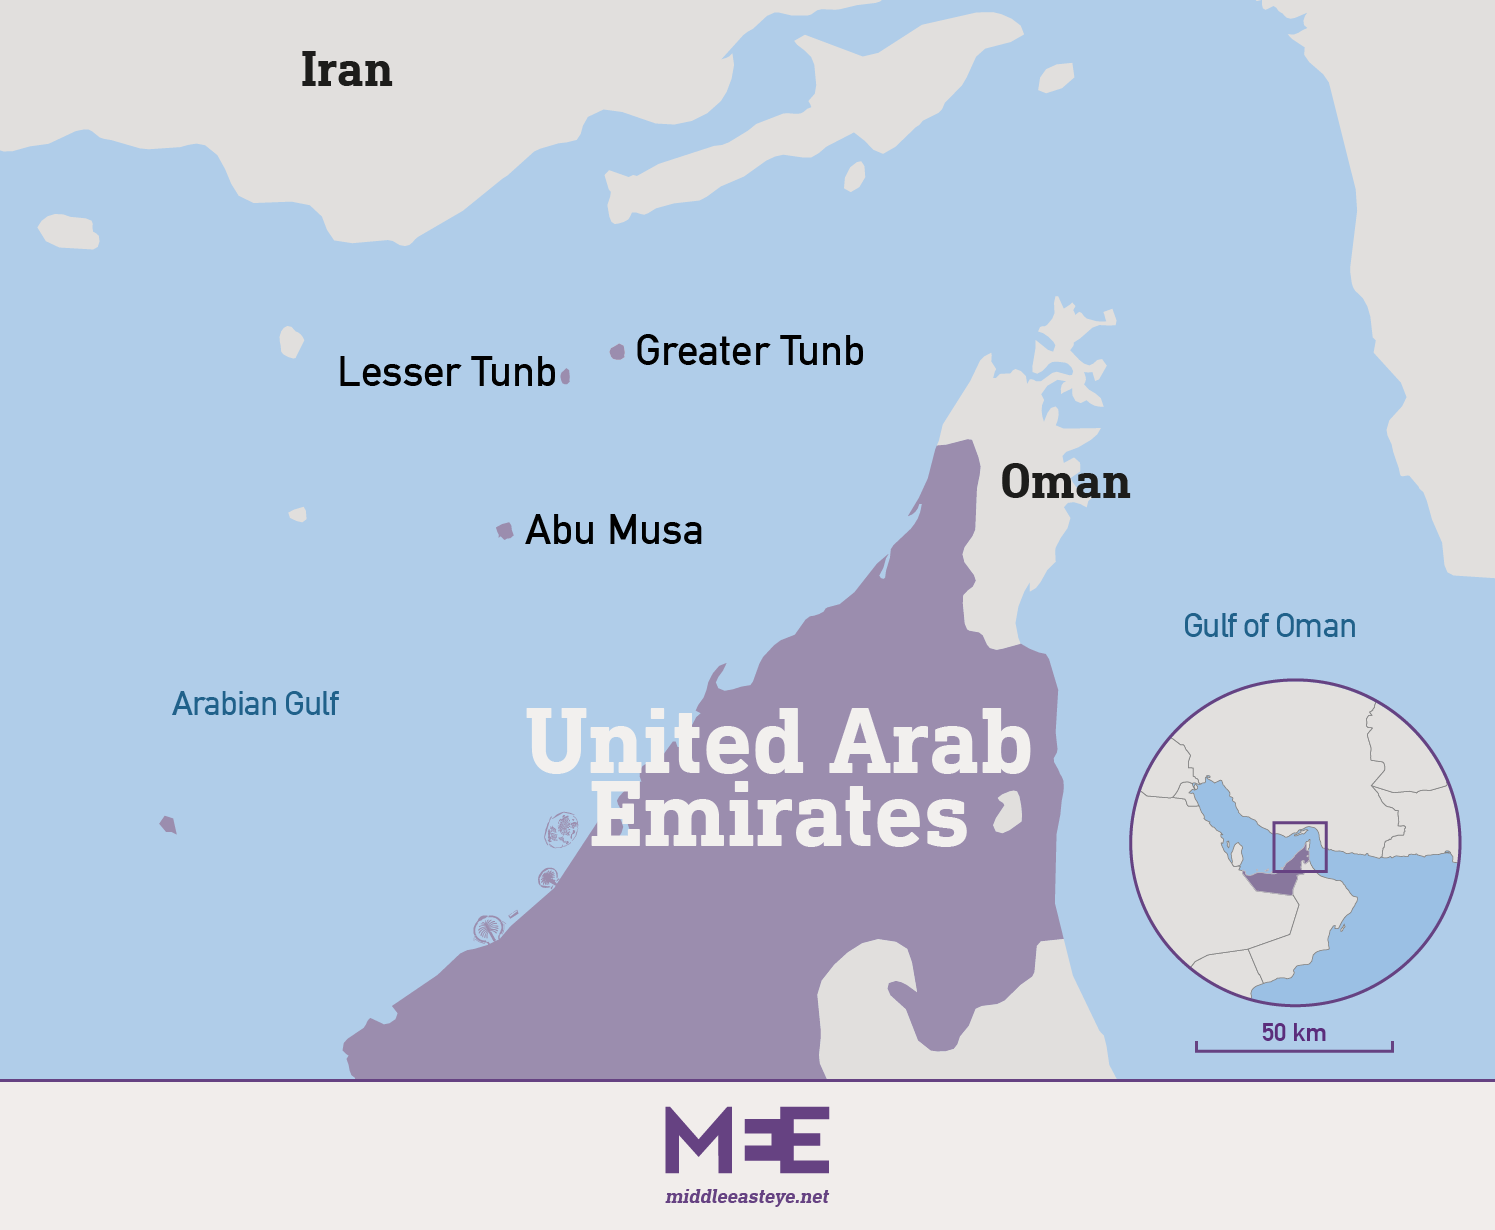 UAE-Iran island dispute 